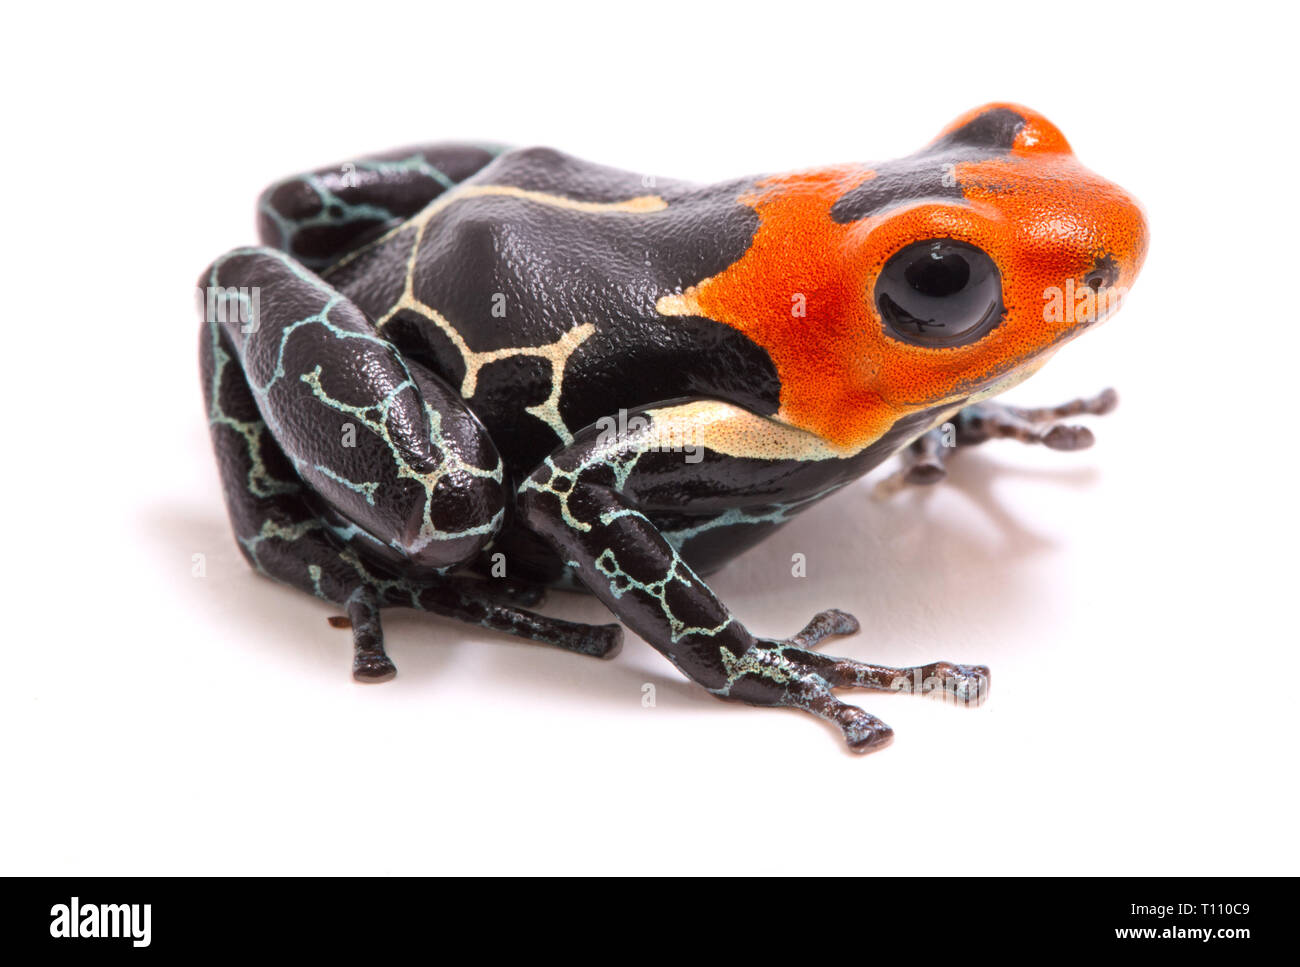 Rothaarige poison Dart oder Pfeil Frosch, Ranitomeya Fantastica. Eine schöne kleine giftige Tiere aus dem Regenwald des Amazonas in Peru. Auf weiß Isoliert Stockfoto